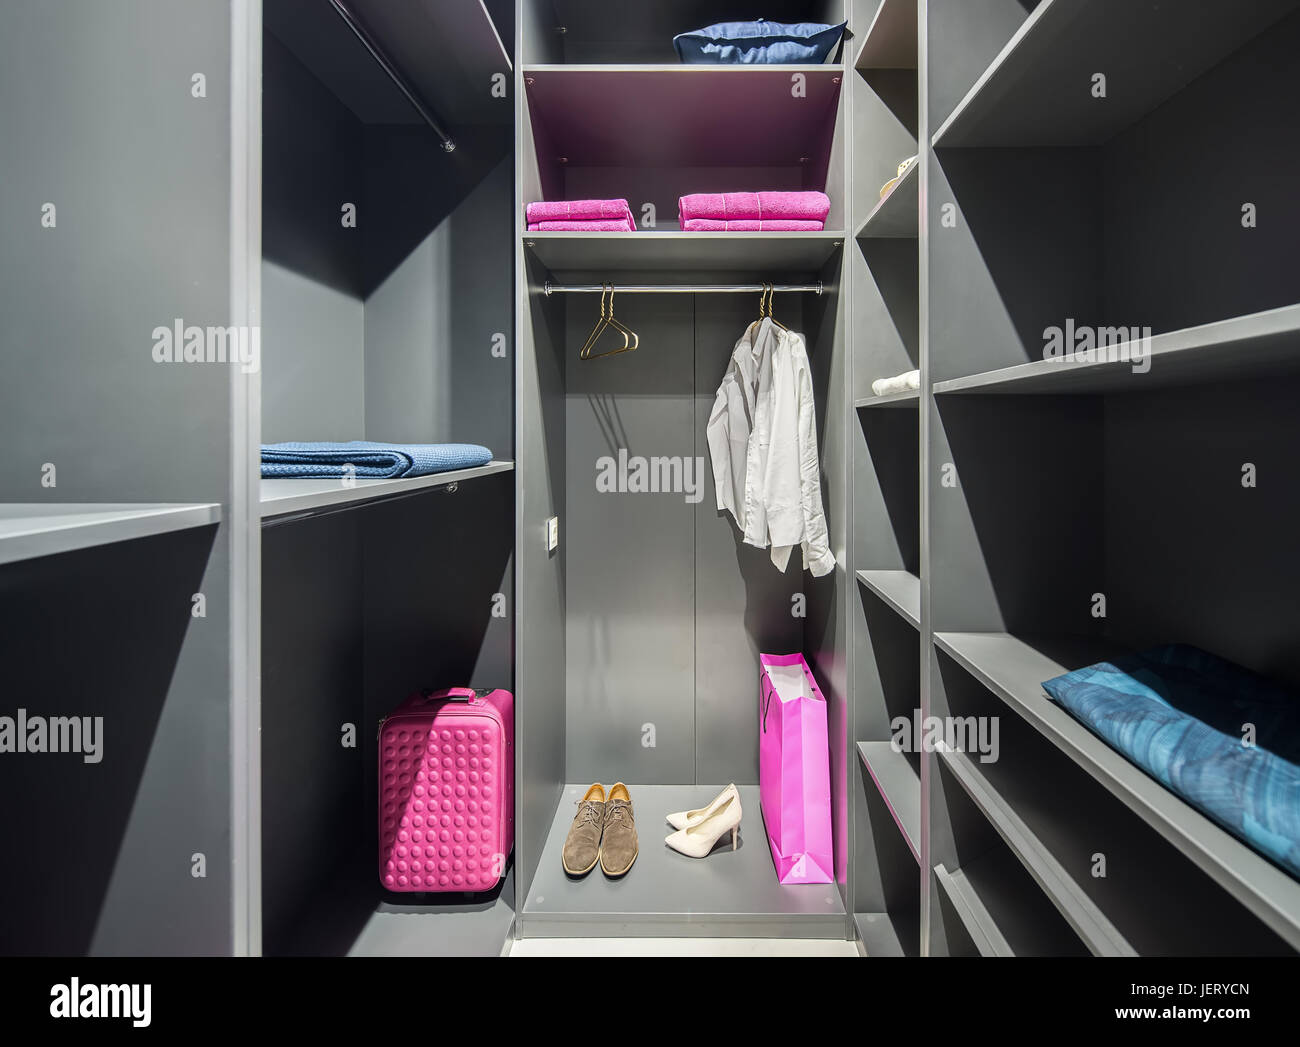 Accesa GRIGIA cabina armadio con molte mensole. Ci sono scarpe, camicie, appendiabiti, asciugamani, cuscino blu, rosa sacchetti. In ambienti chiusi. Orizzontale. Foto Stock